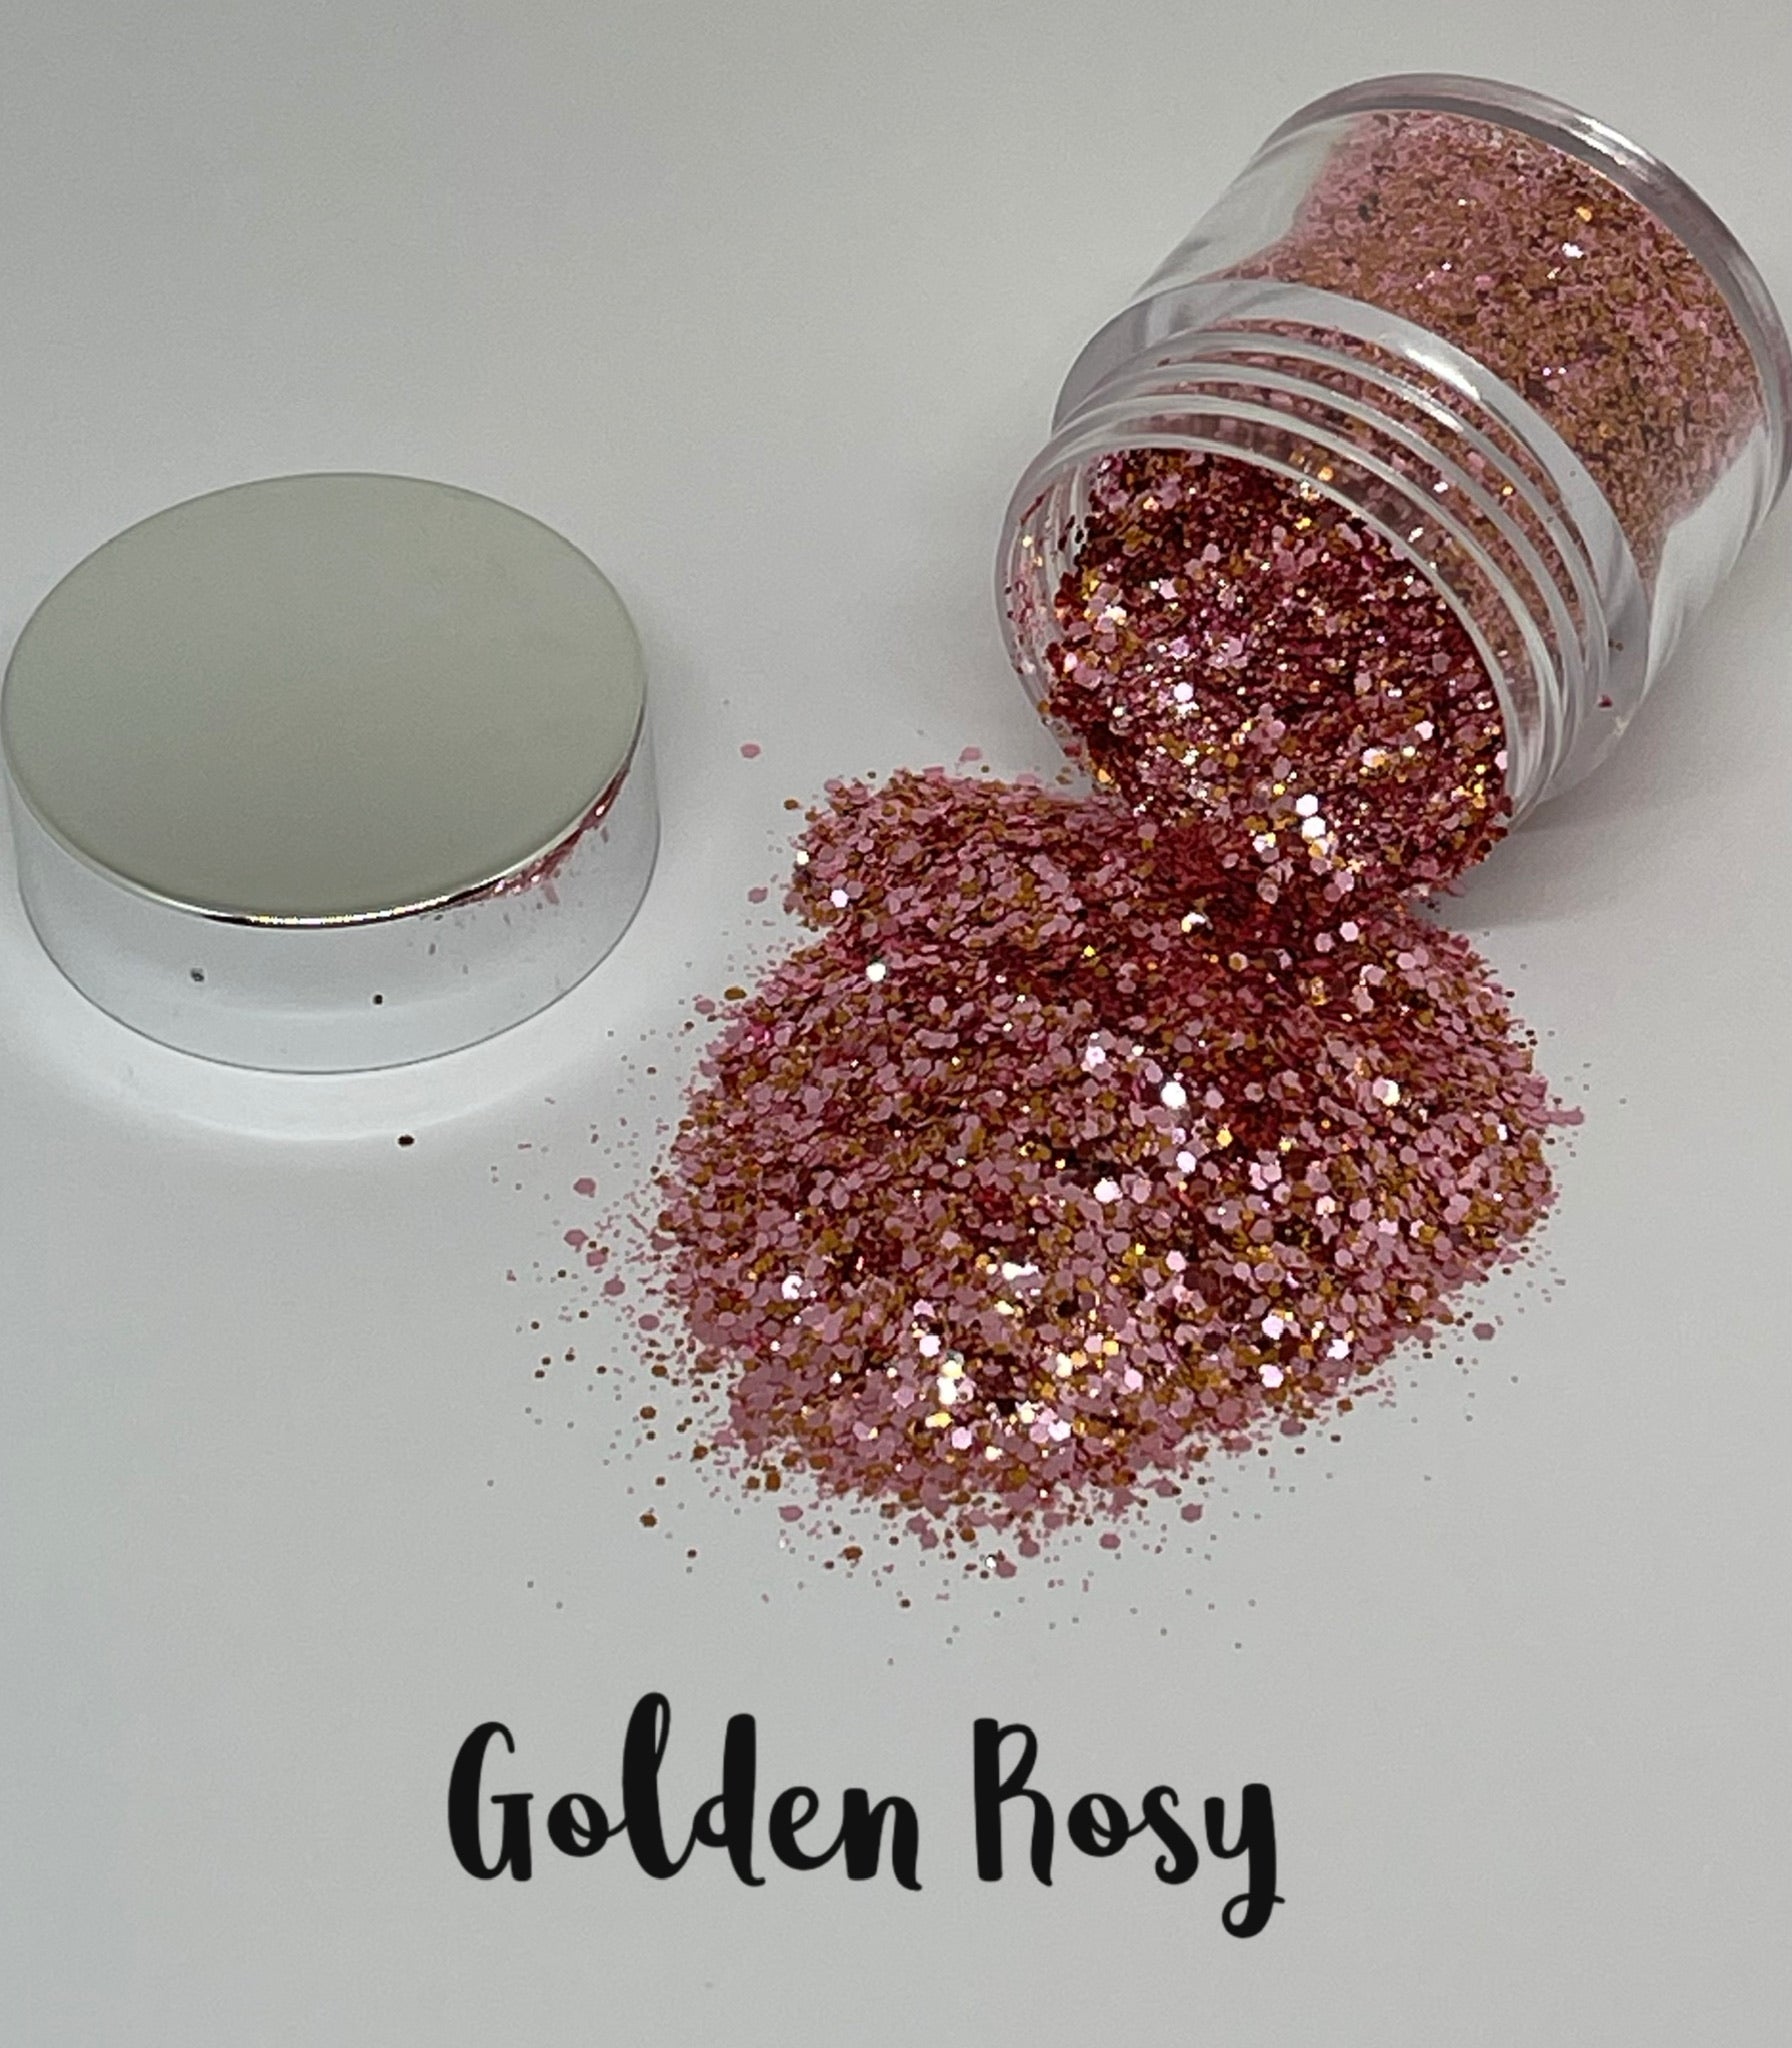 Golden Rosy